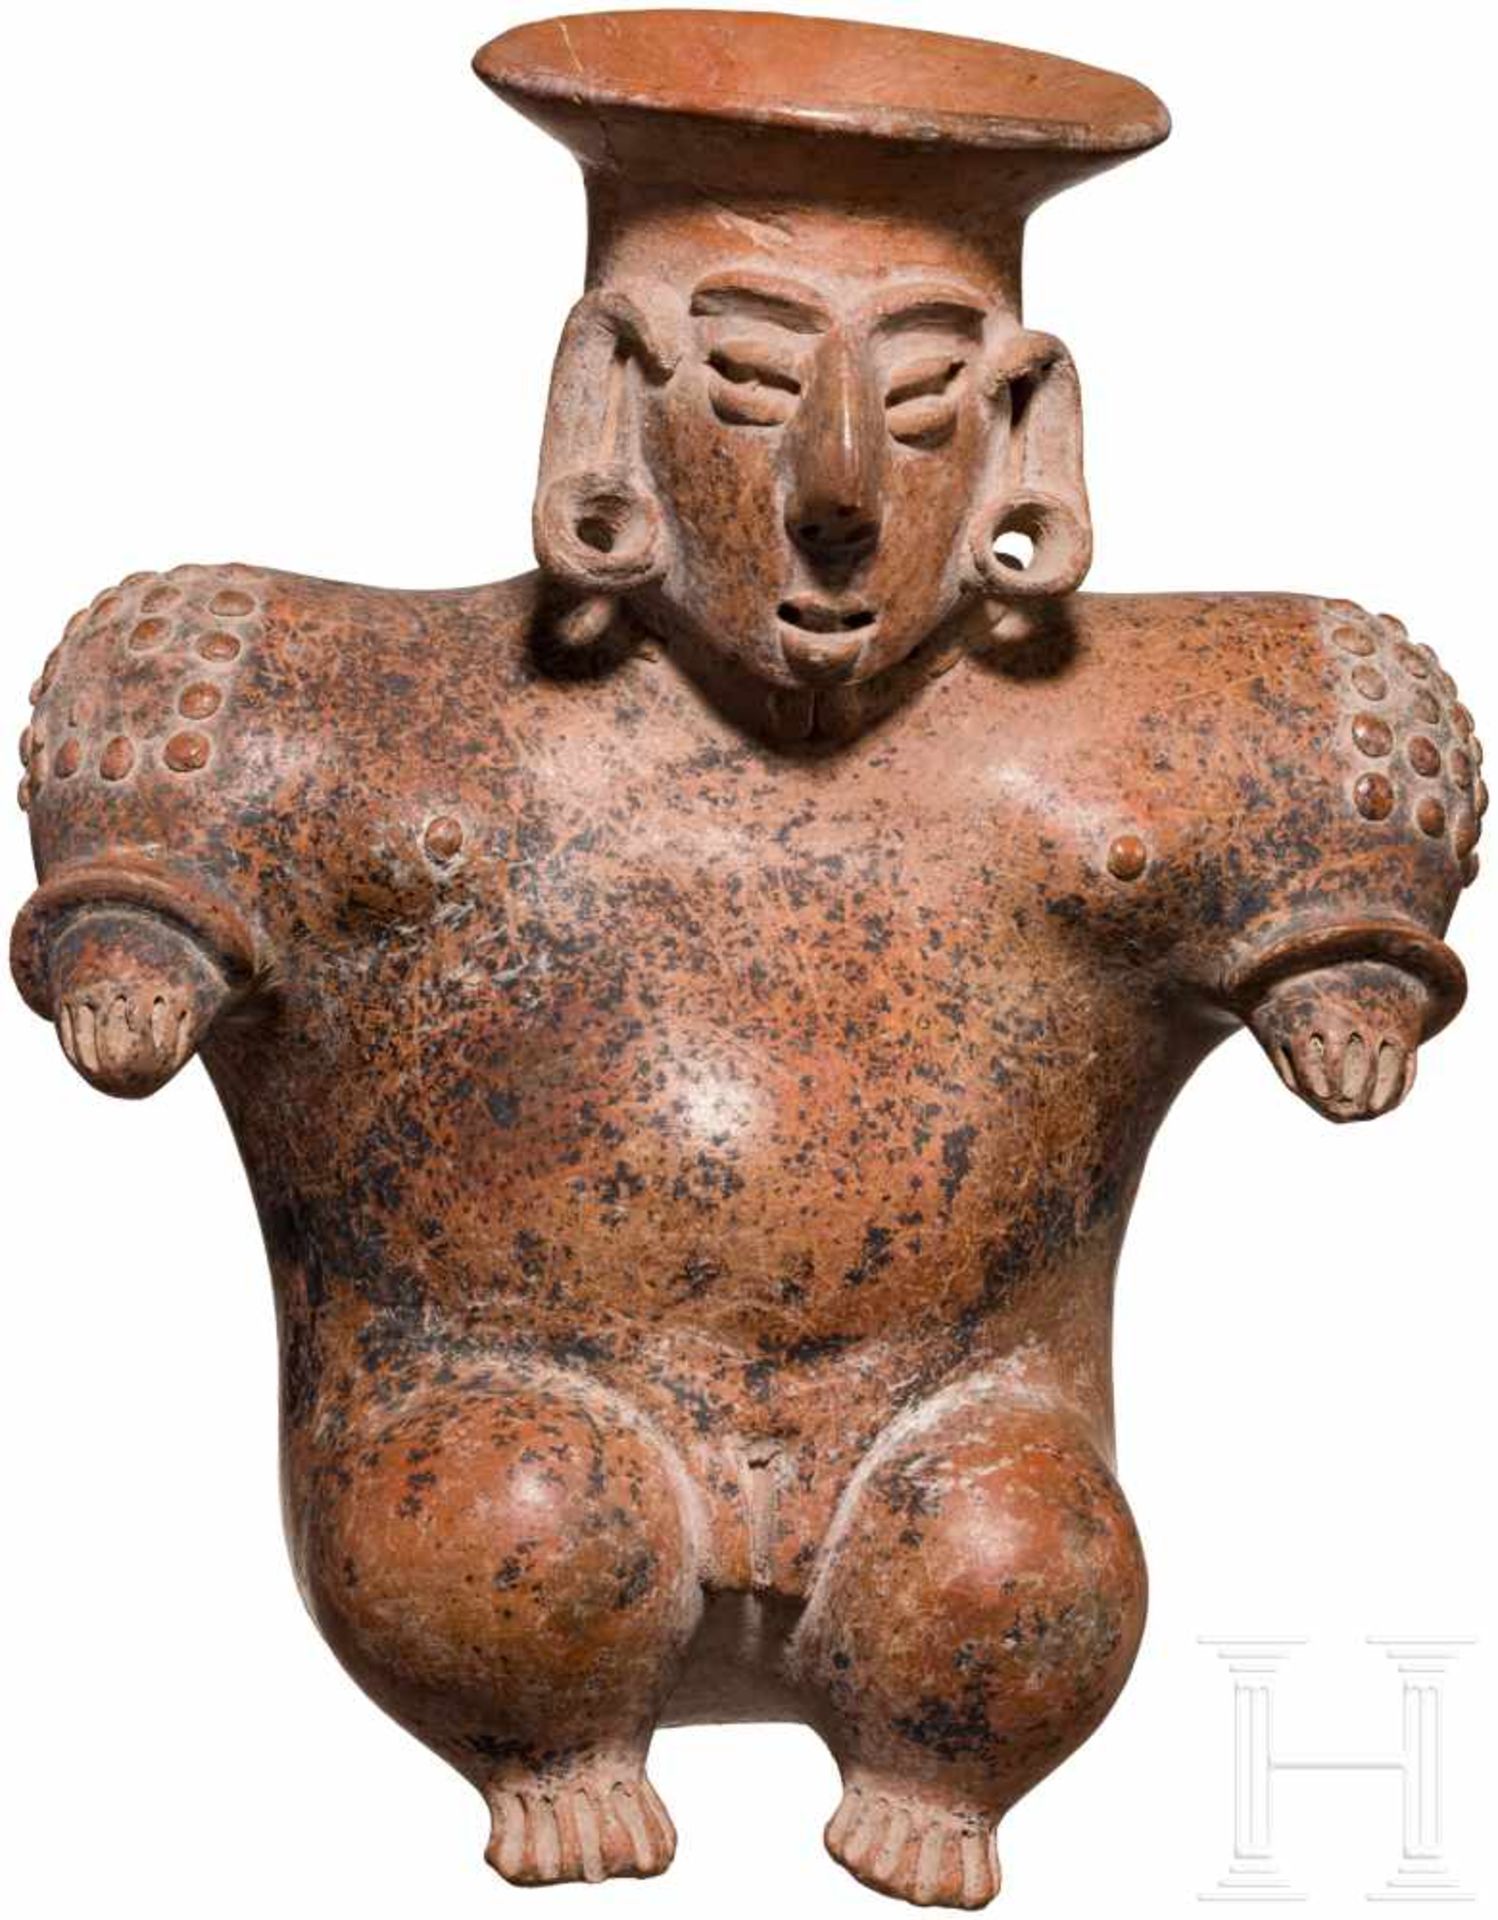 Figurengefäß, Nayarit, Mexiko, 100 v. Chr. - 250 n. Chr.Bauchiges Keramikgefäß in Form einer